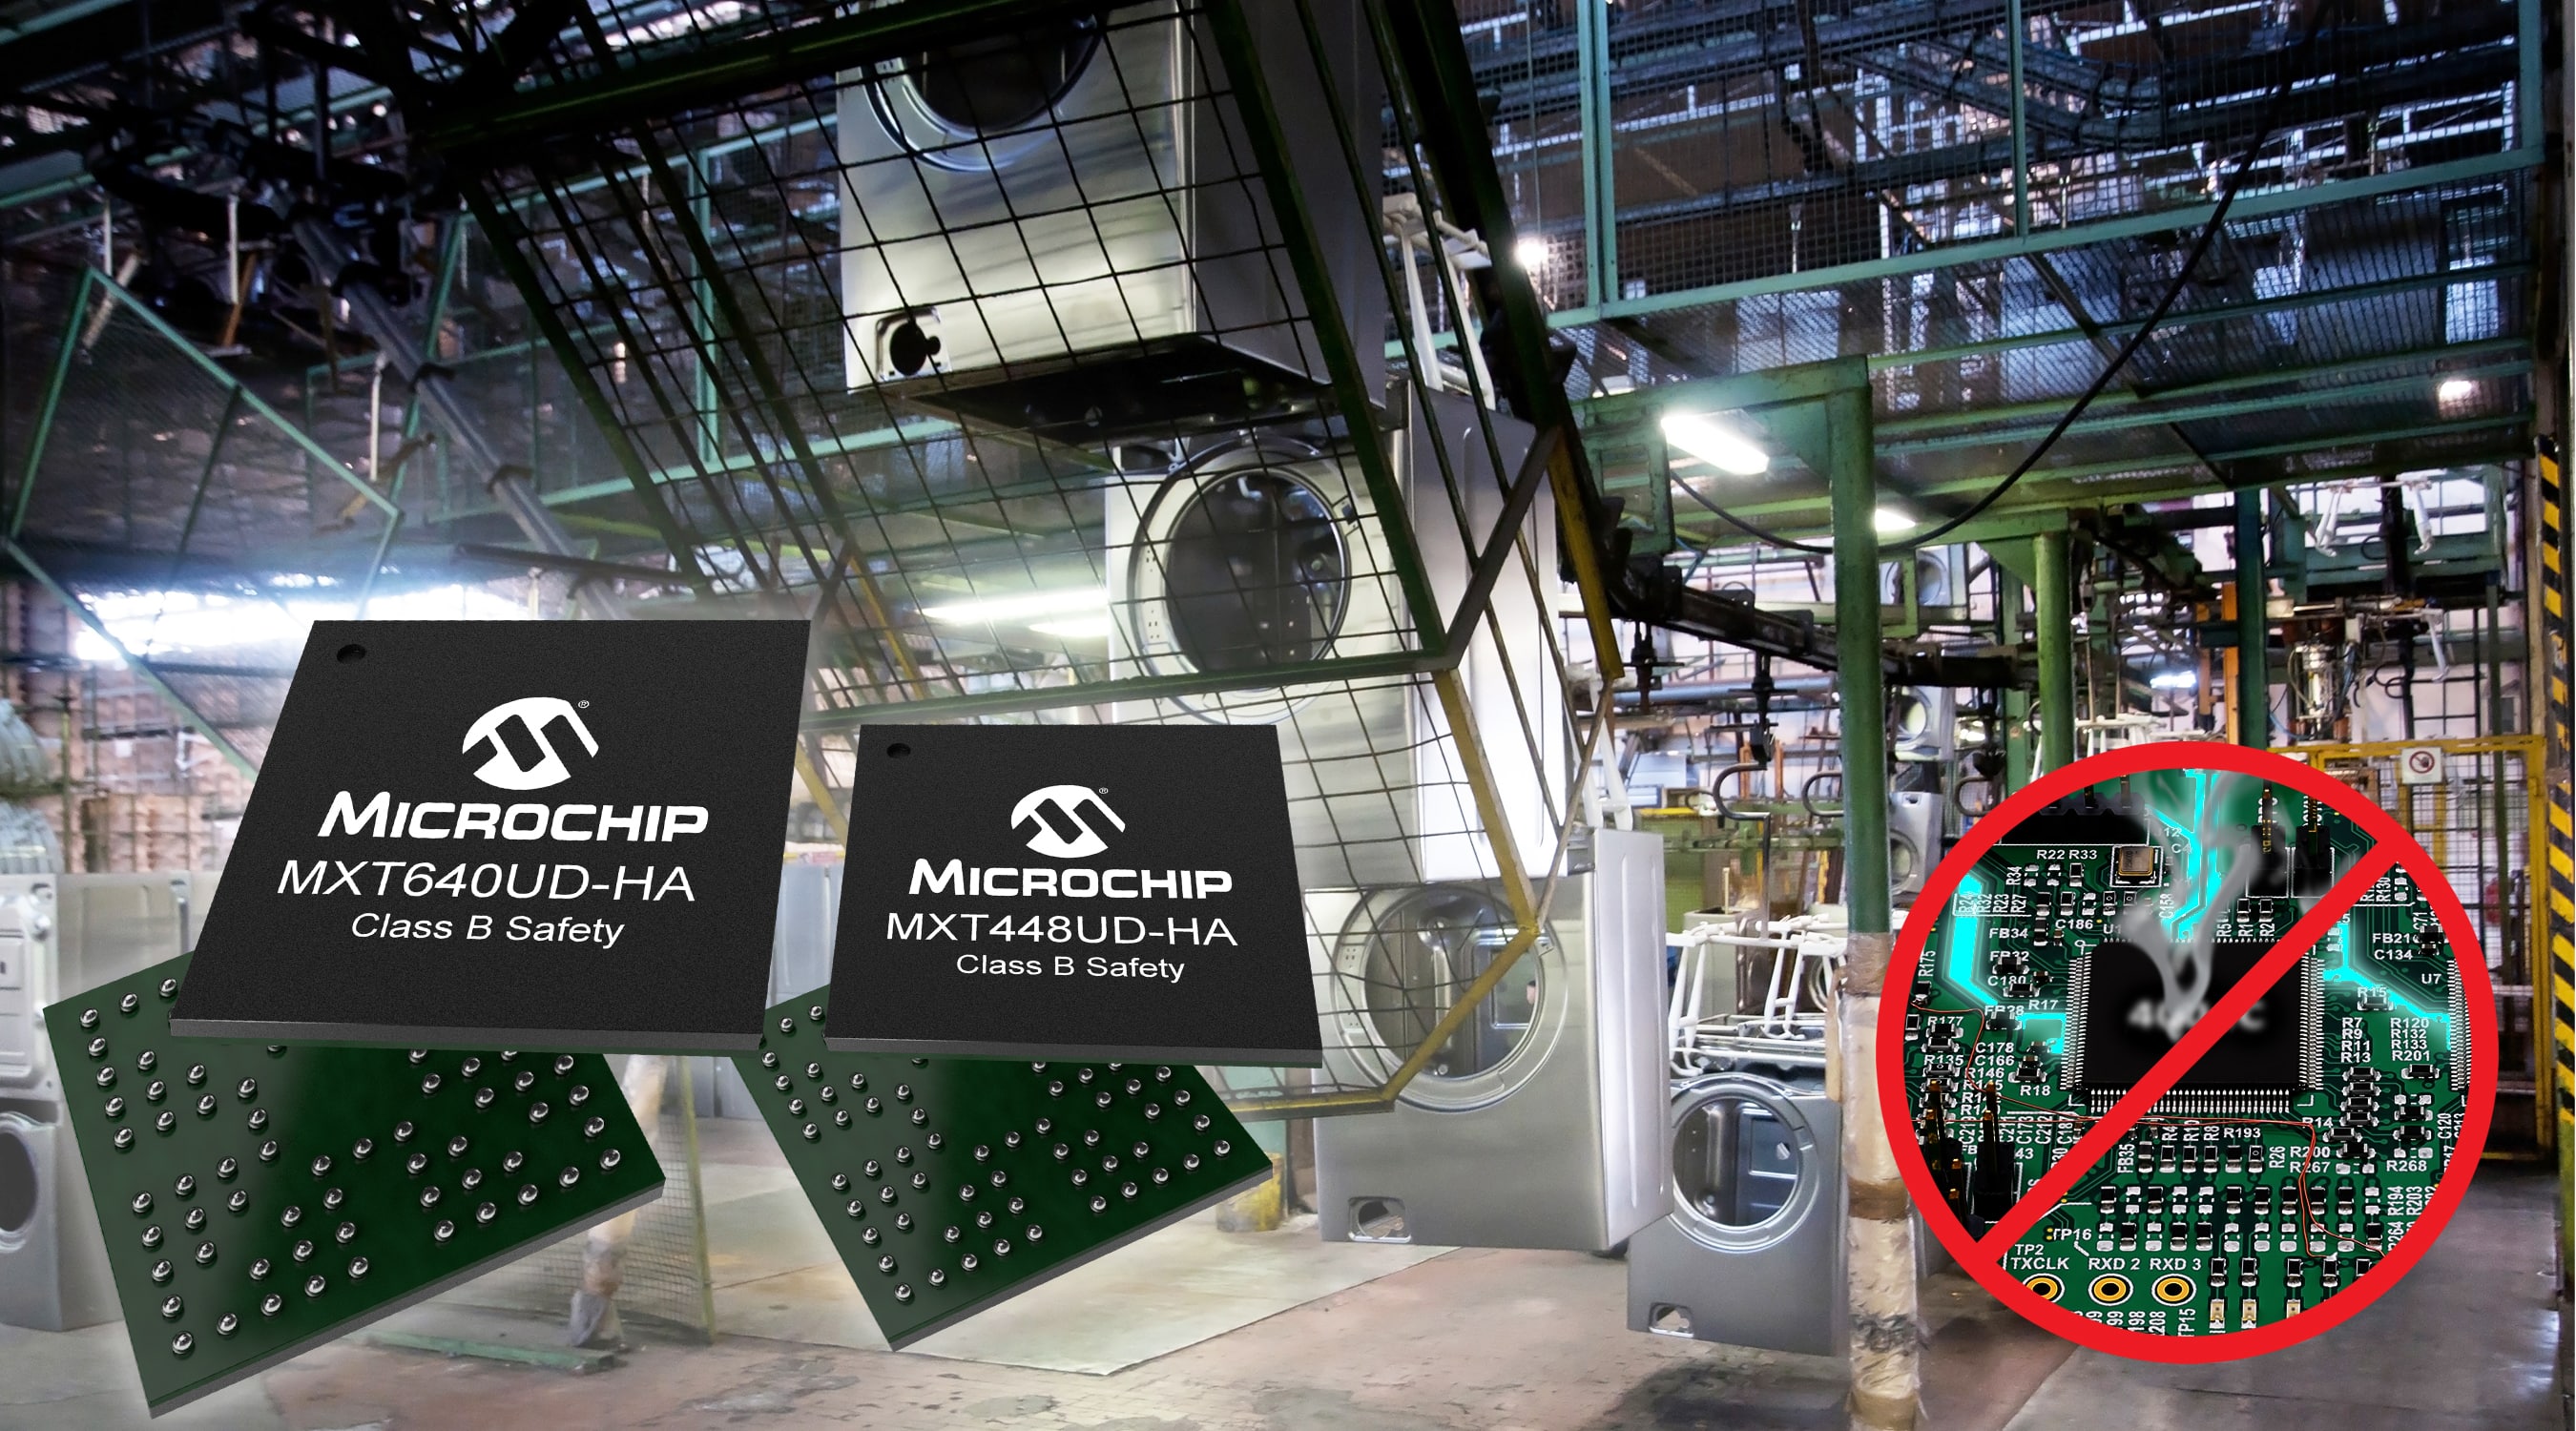 “Microchip推出面向家用电器市场的电容式触摸屏控制器系列产品，可适应恶劣和嘈杂环境"